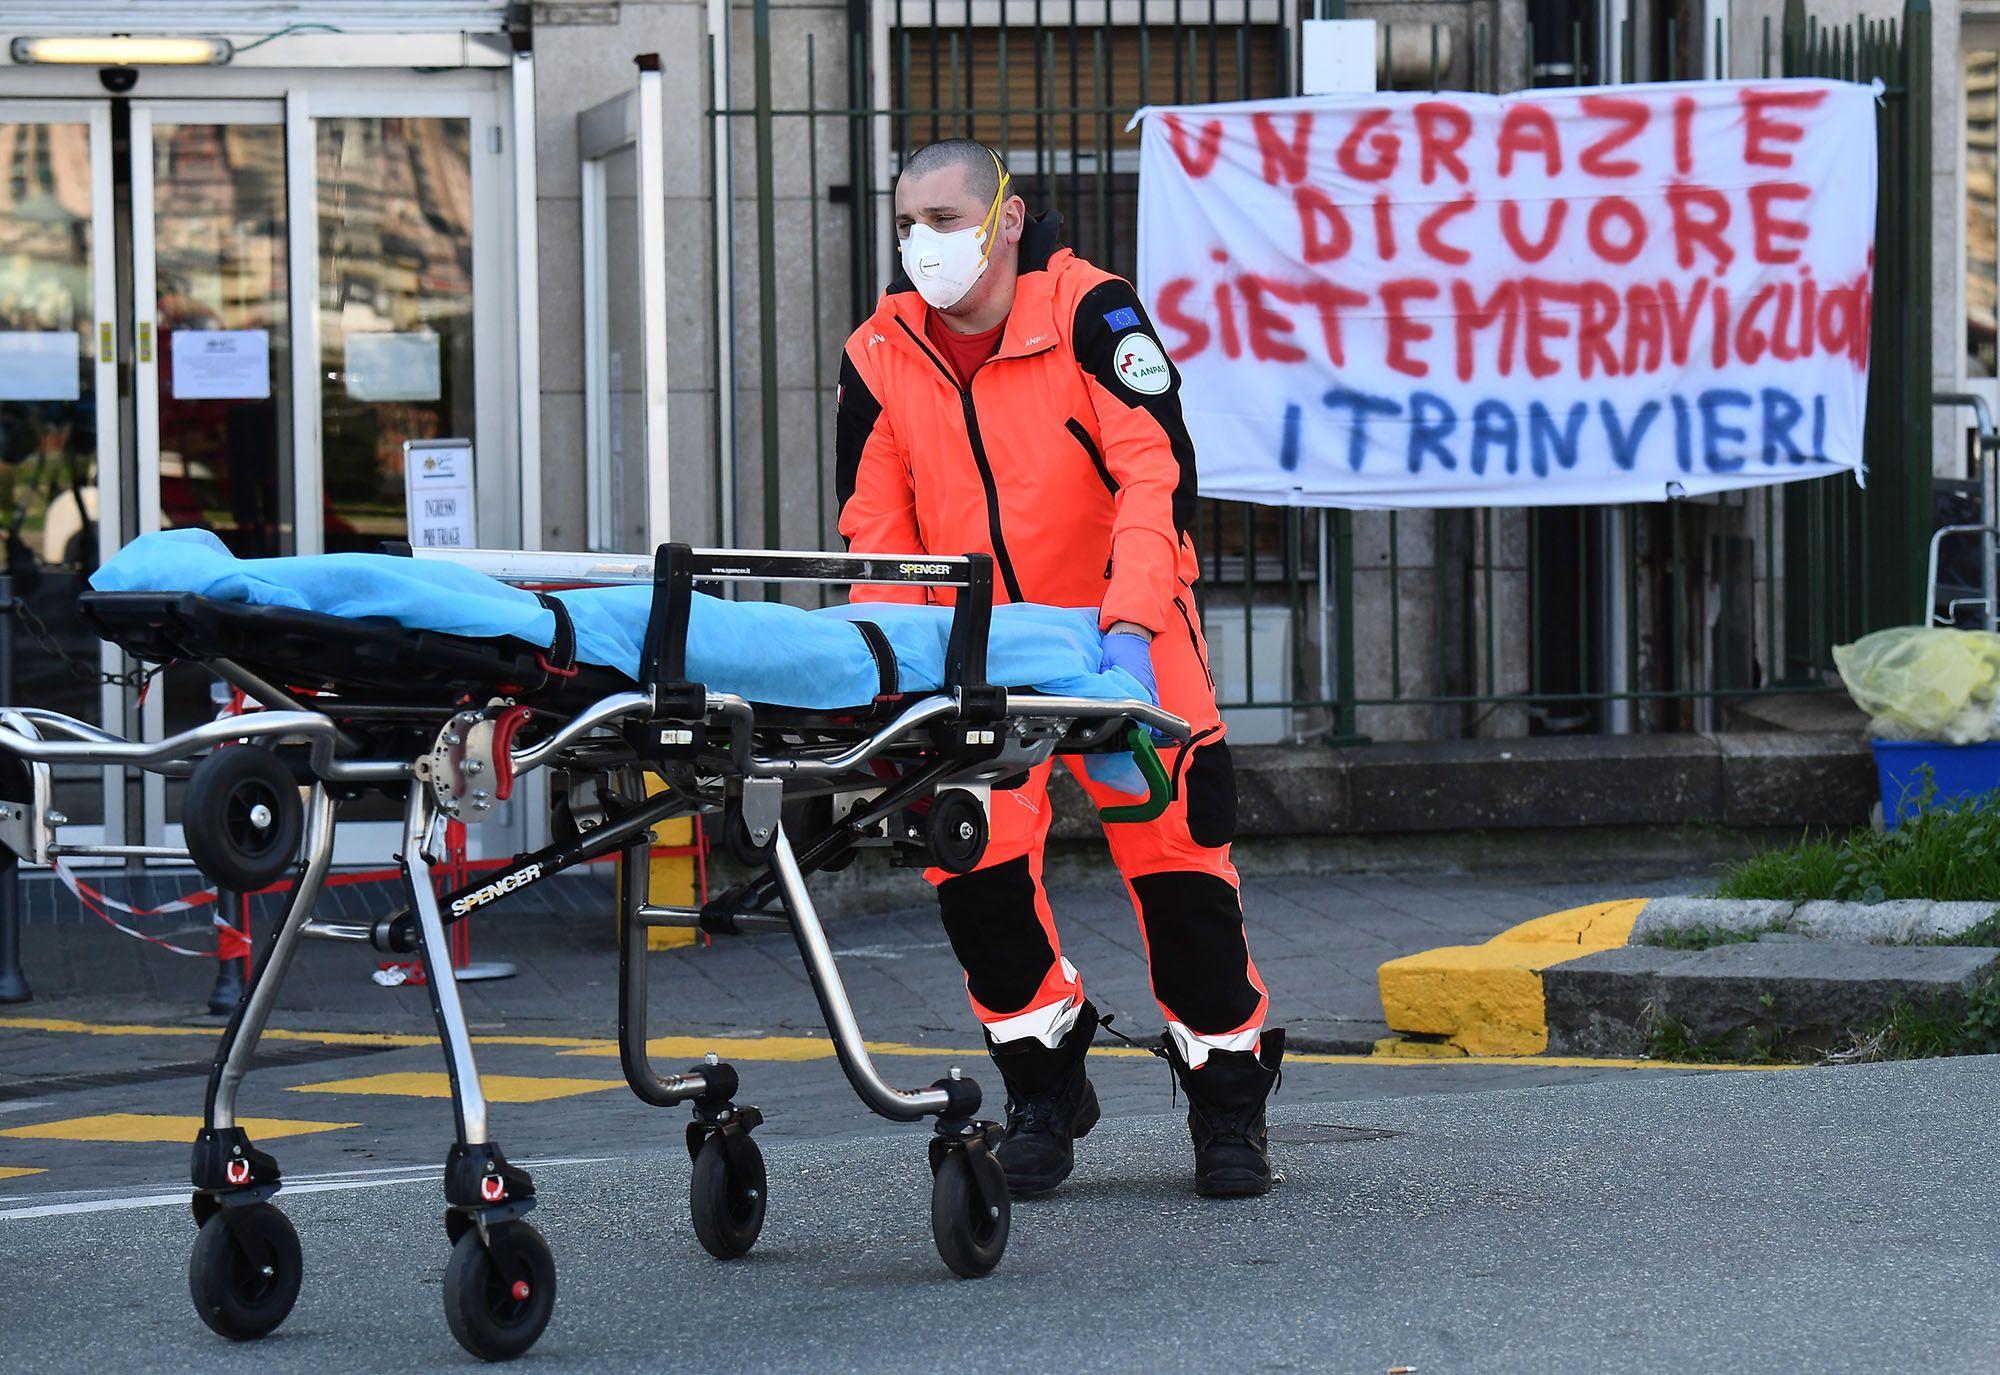 Италия разочарована реакцией Евросоюза на коронавирус – итальянский эксперт